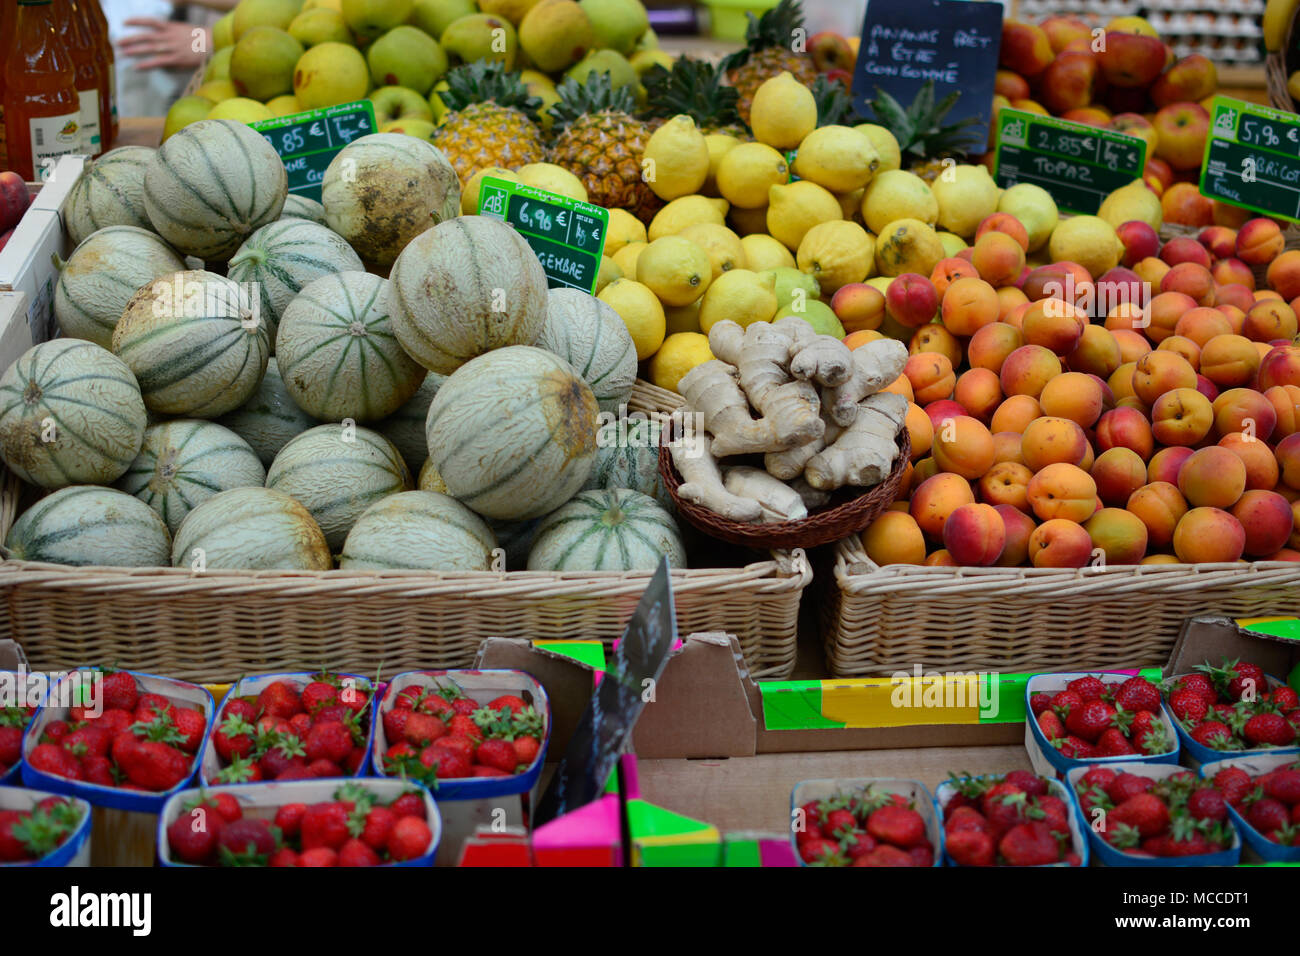 Fresh produce from the farmer's market Stock Photo